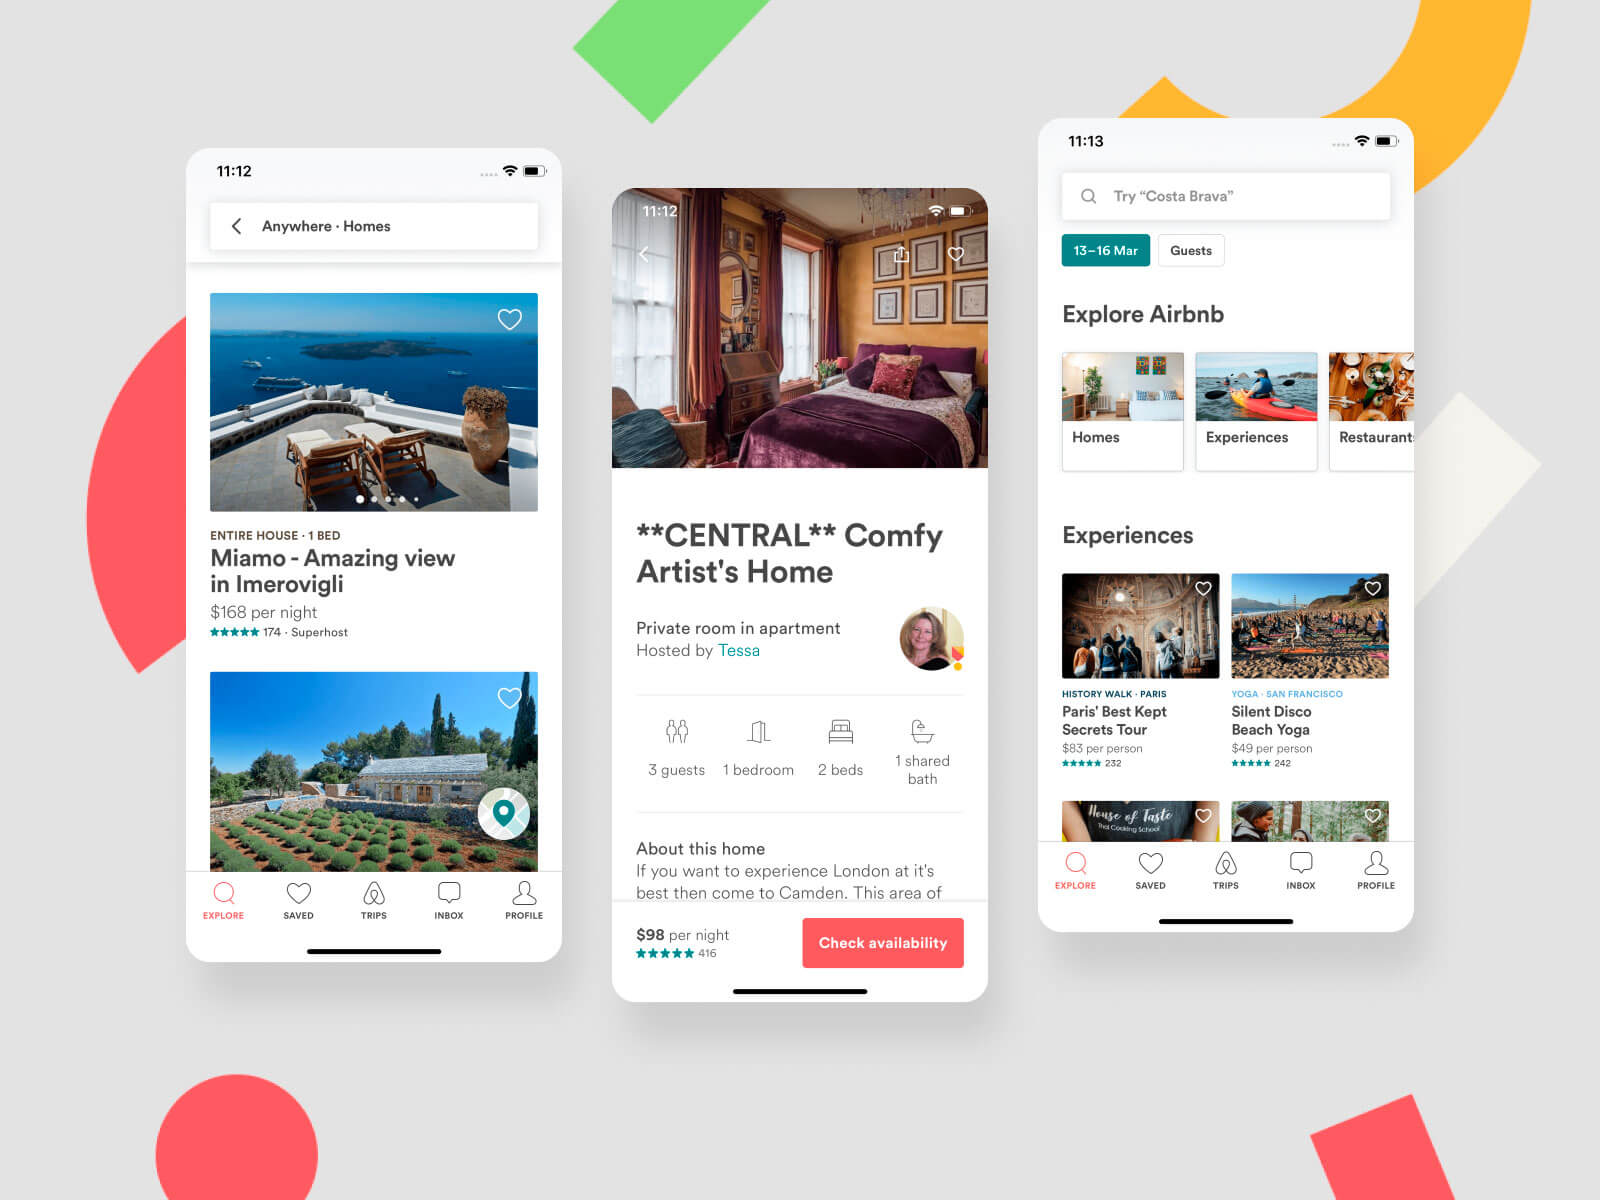 aplicación similar a airbnb, otras aplicaciones como airbnb, aplicaciones similares a airbnb, aplicaciones similares a airbnb, aplicaciones tipo airbnb, aplicación similar a airbnb